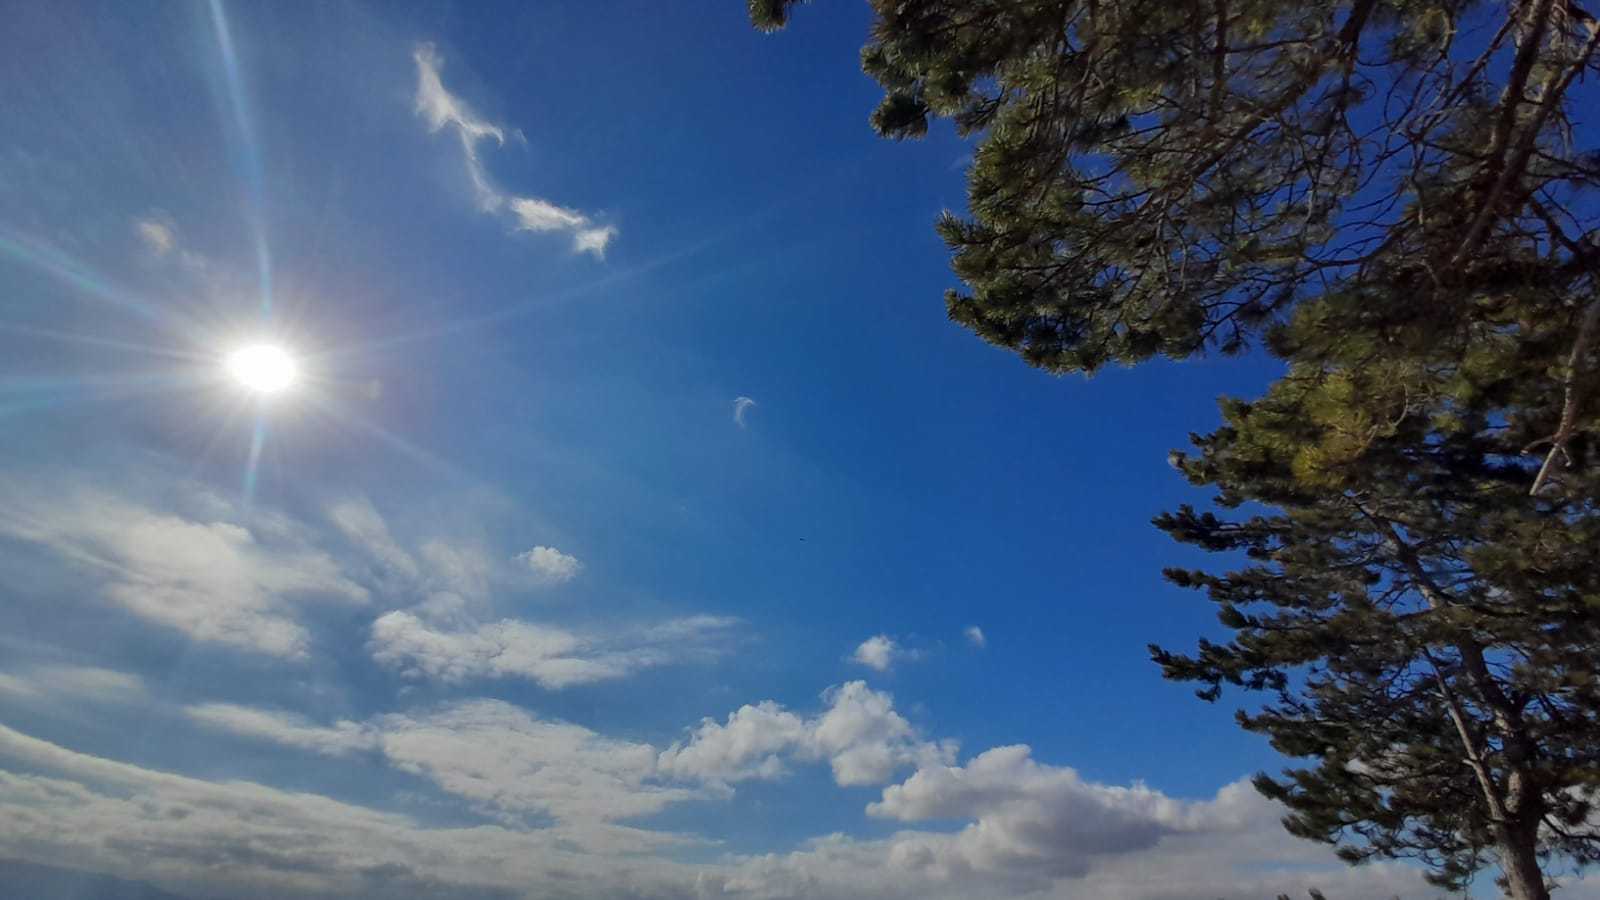 Meteo Ragusa: oggi giovedì 30 Novembre sereno con qualche nube.